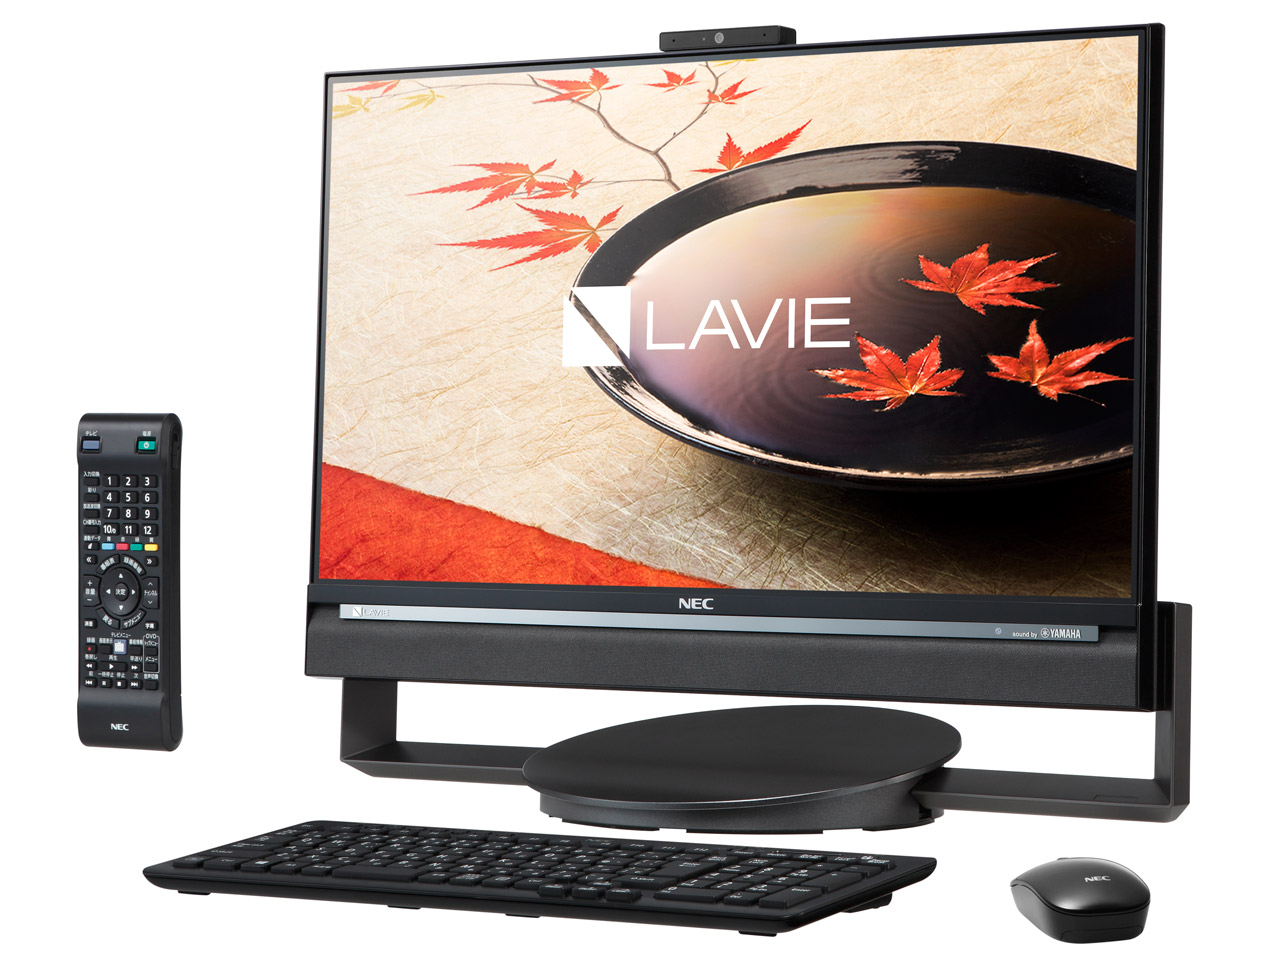 NEC LAVIE Desk All-in-one DA770/CAB PC-DA770CAB 取扱説明書・レビュー記事 - トリセツ